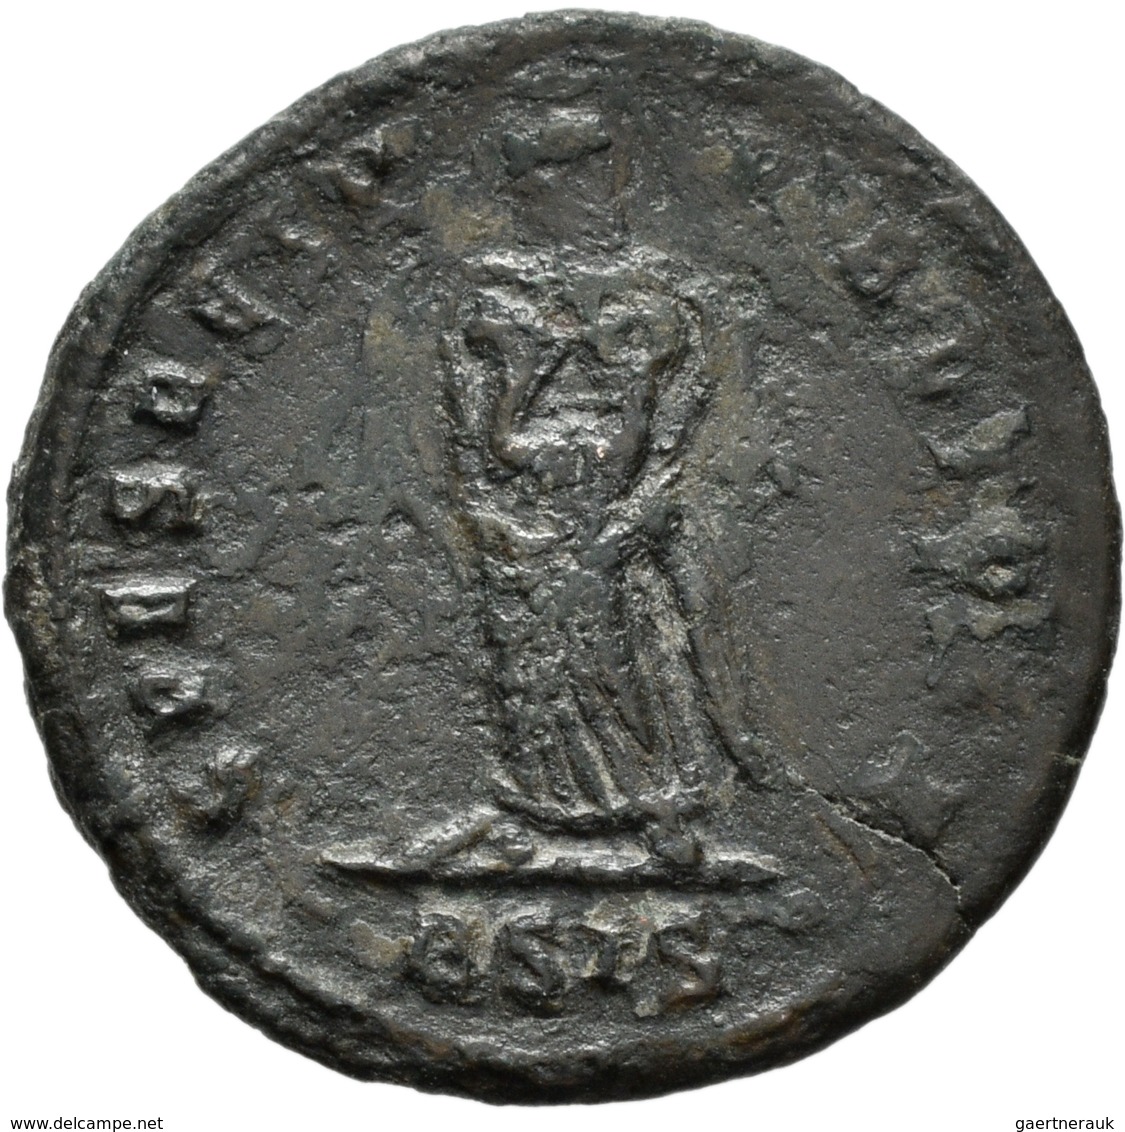 Antike: Gemischtes Lot von 22 antiken Münzen.Kelten, Griechen, Römer, unterschiedliche Erhaltungen.G